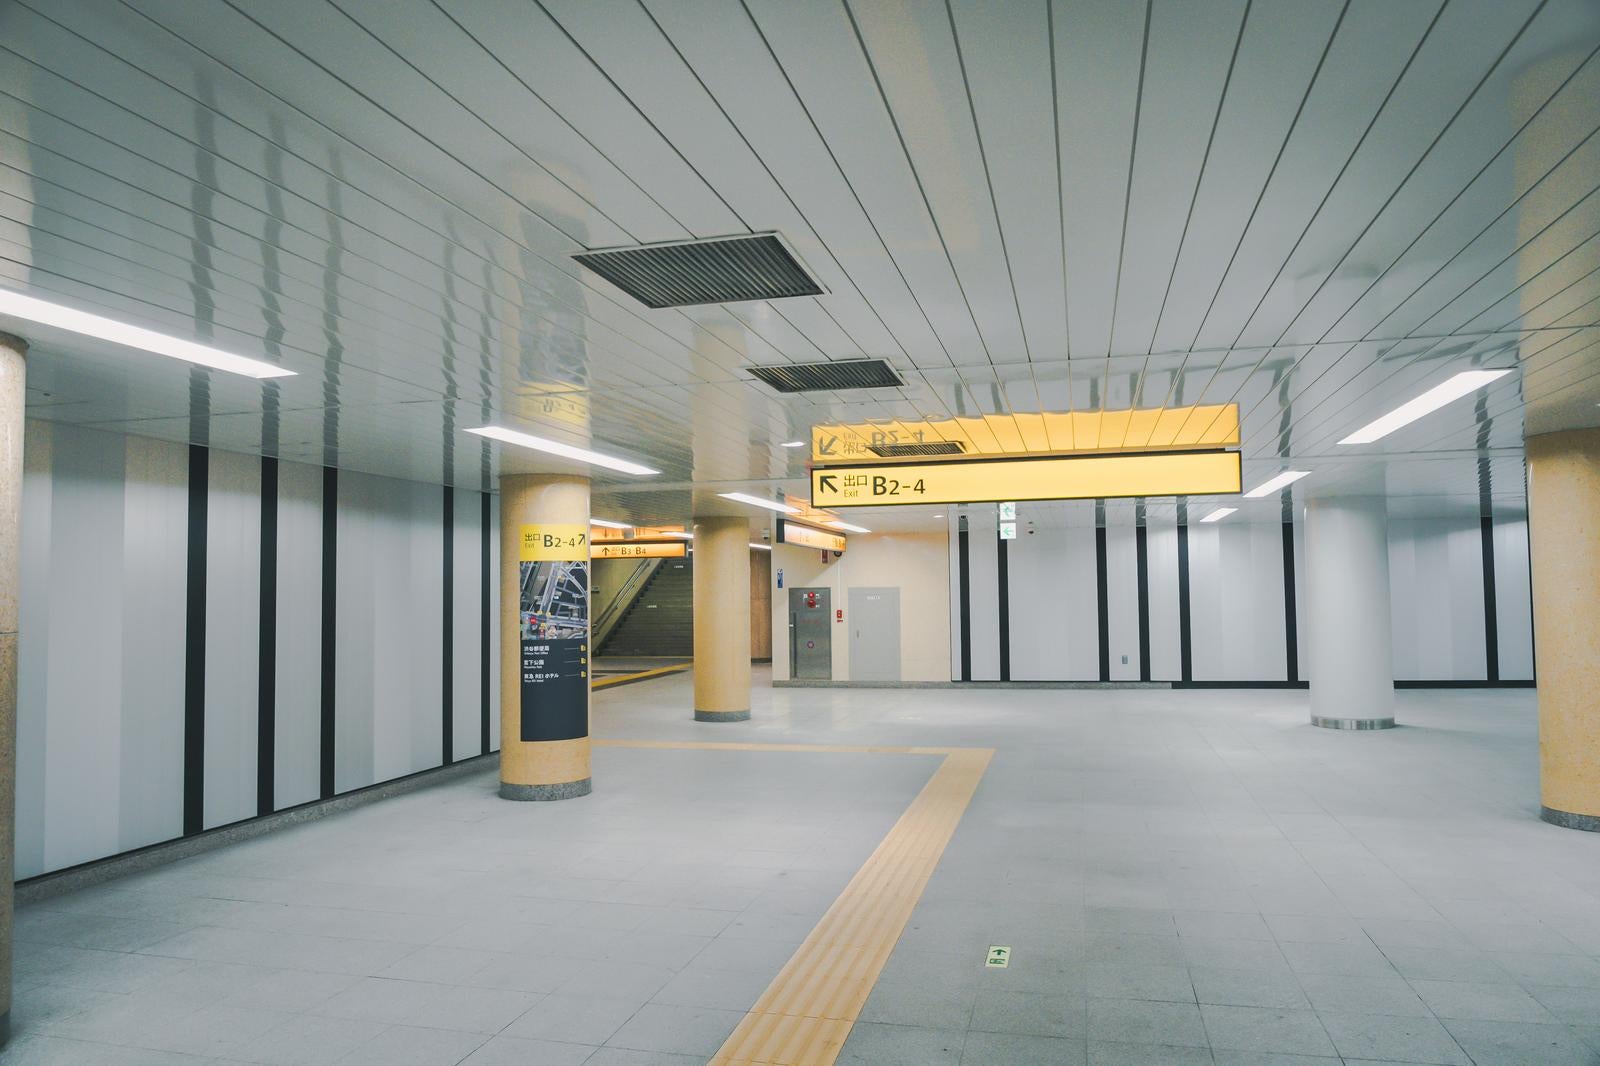 「東京メトロ副都心線渋谷駅内B2-4付近」の写真